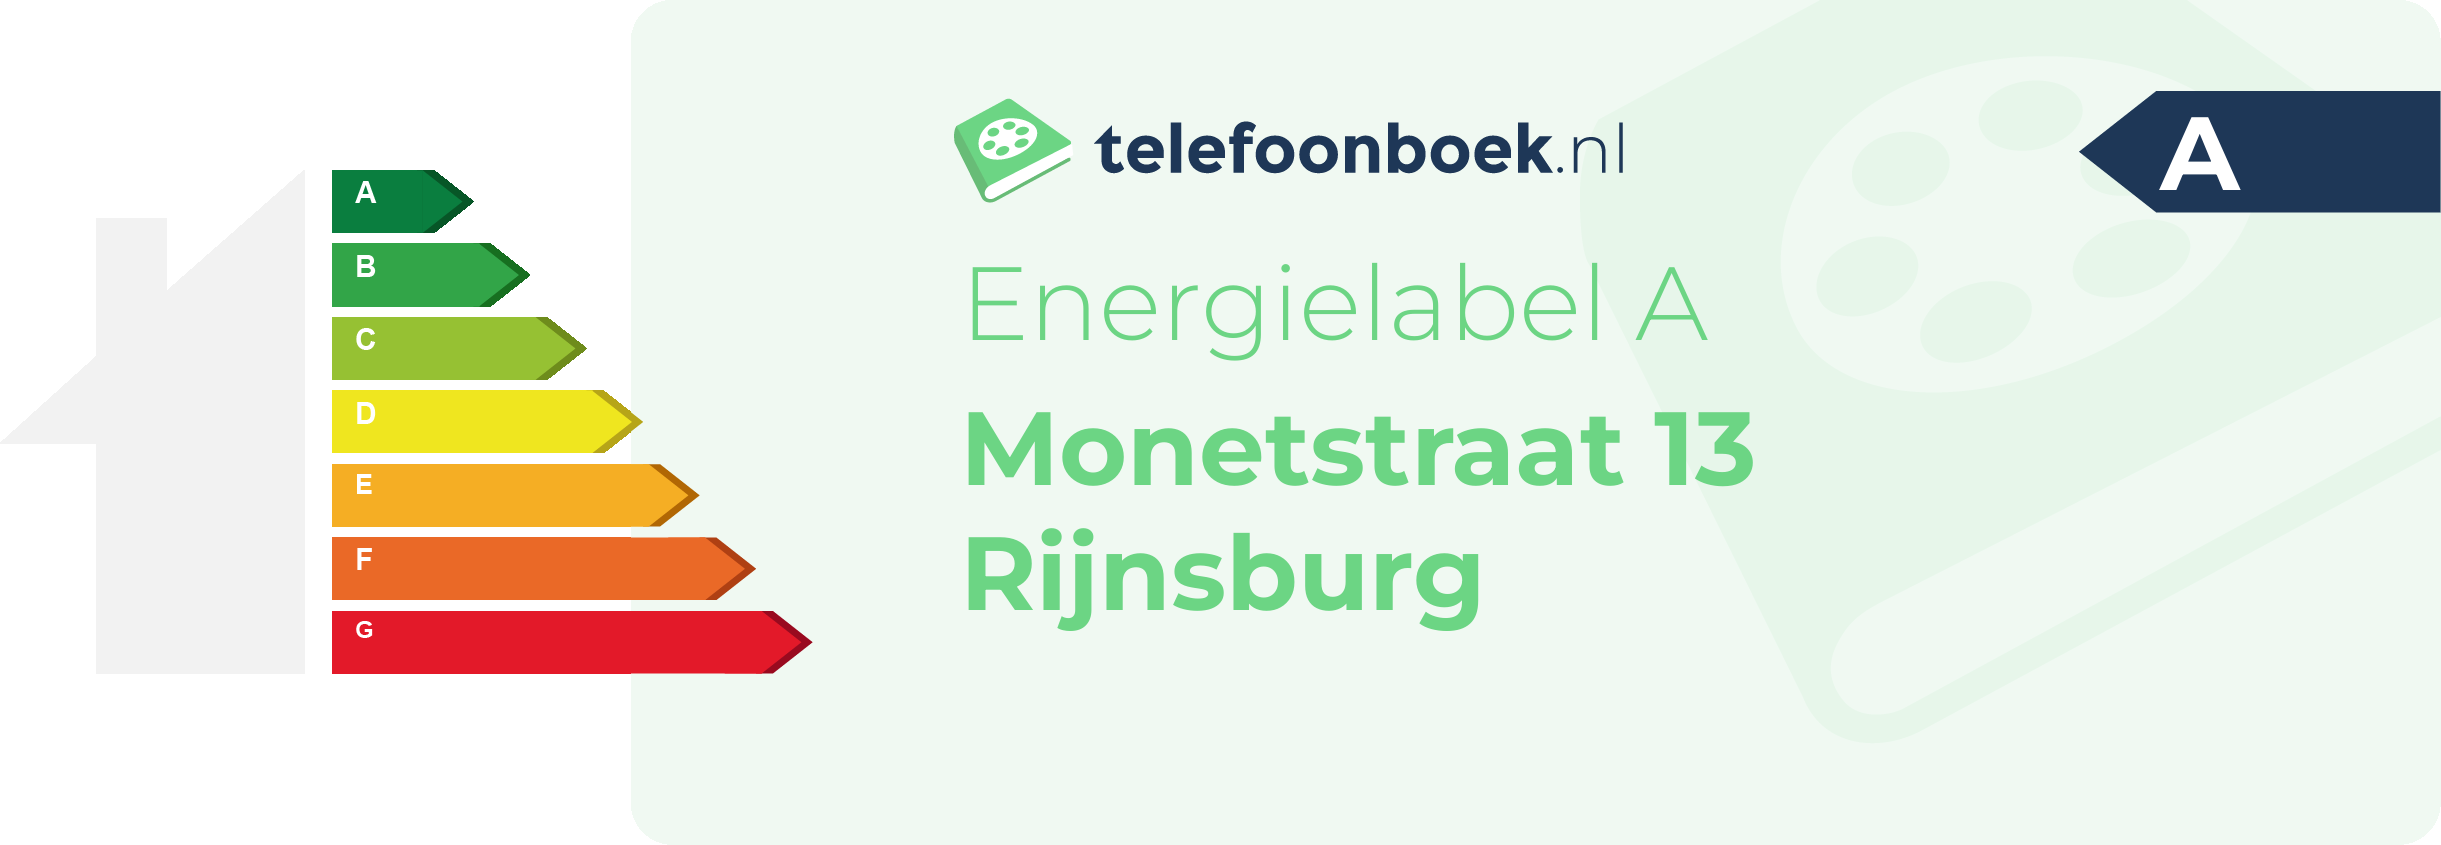 Energielabel Monetstraat 13 Rijnsburg